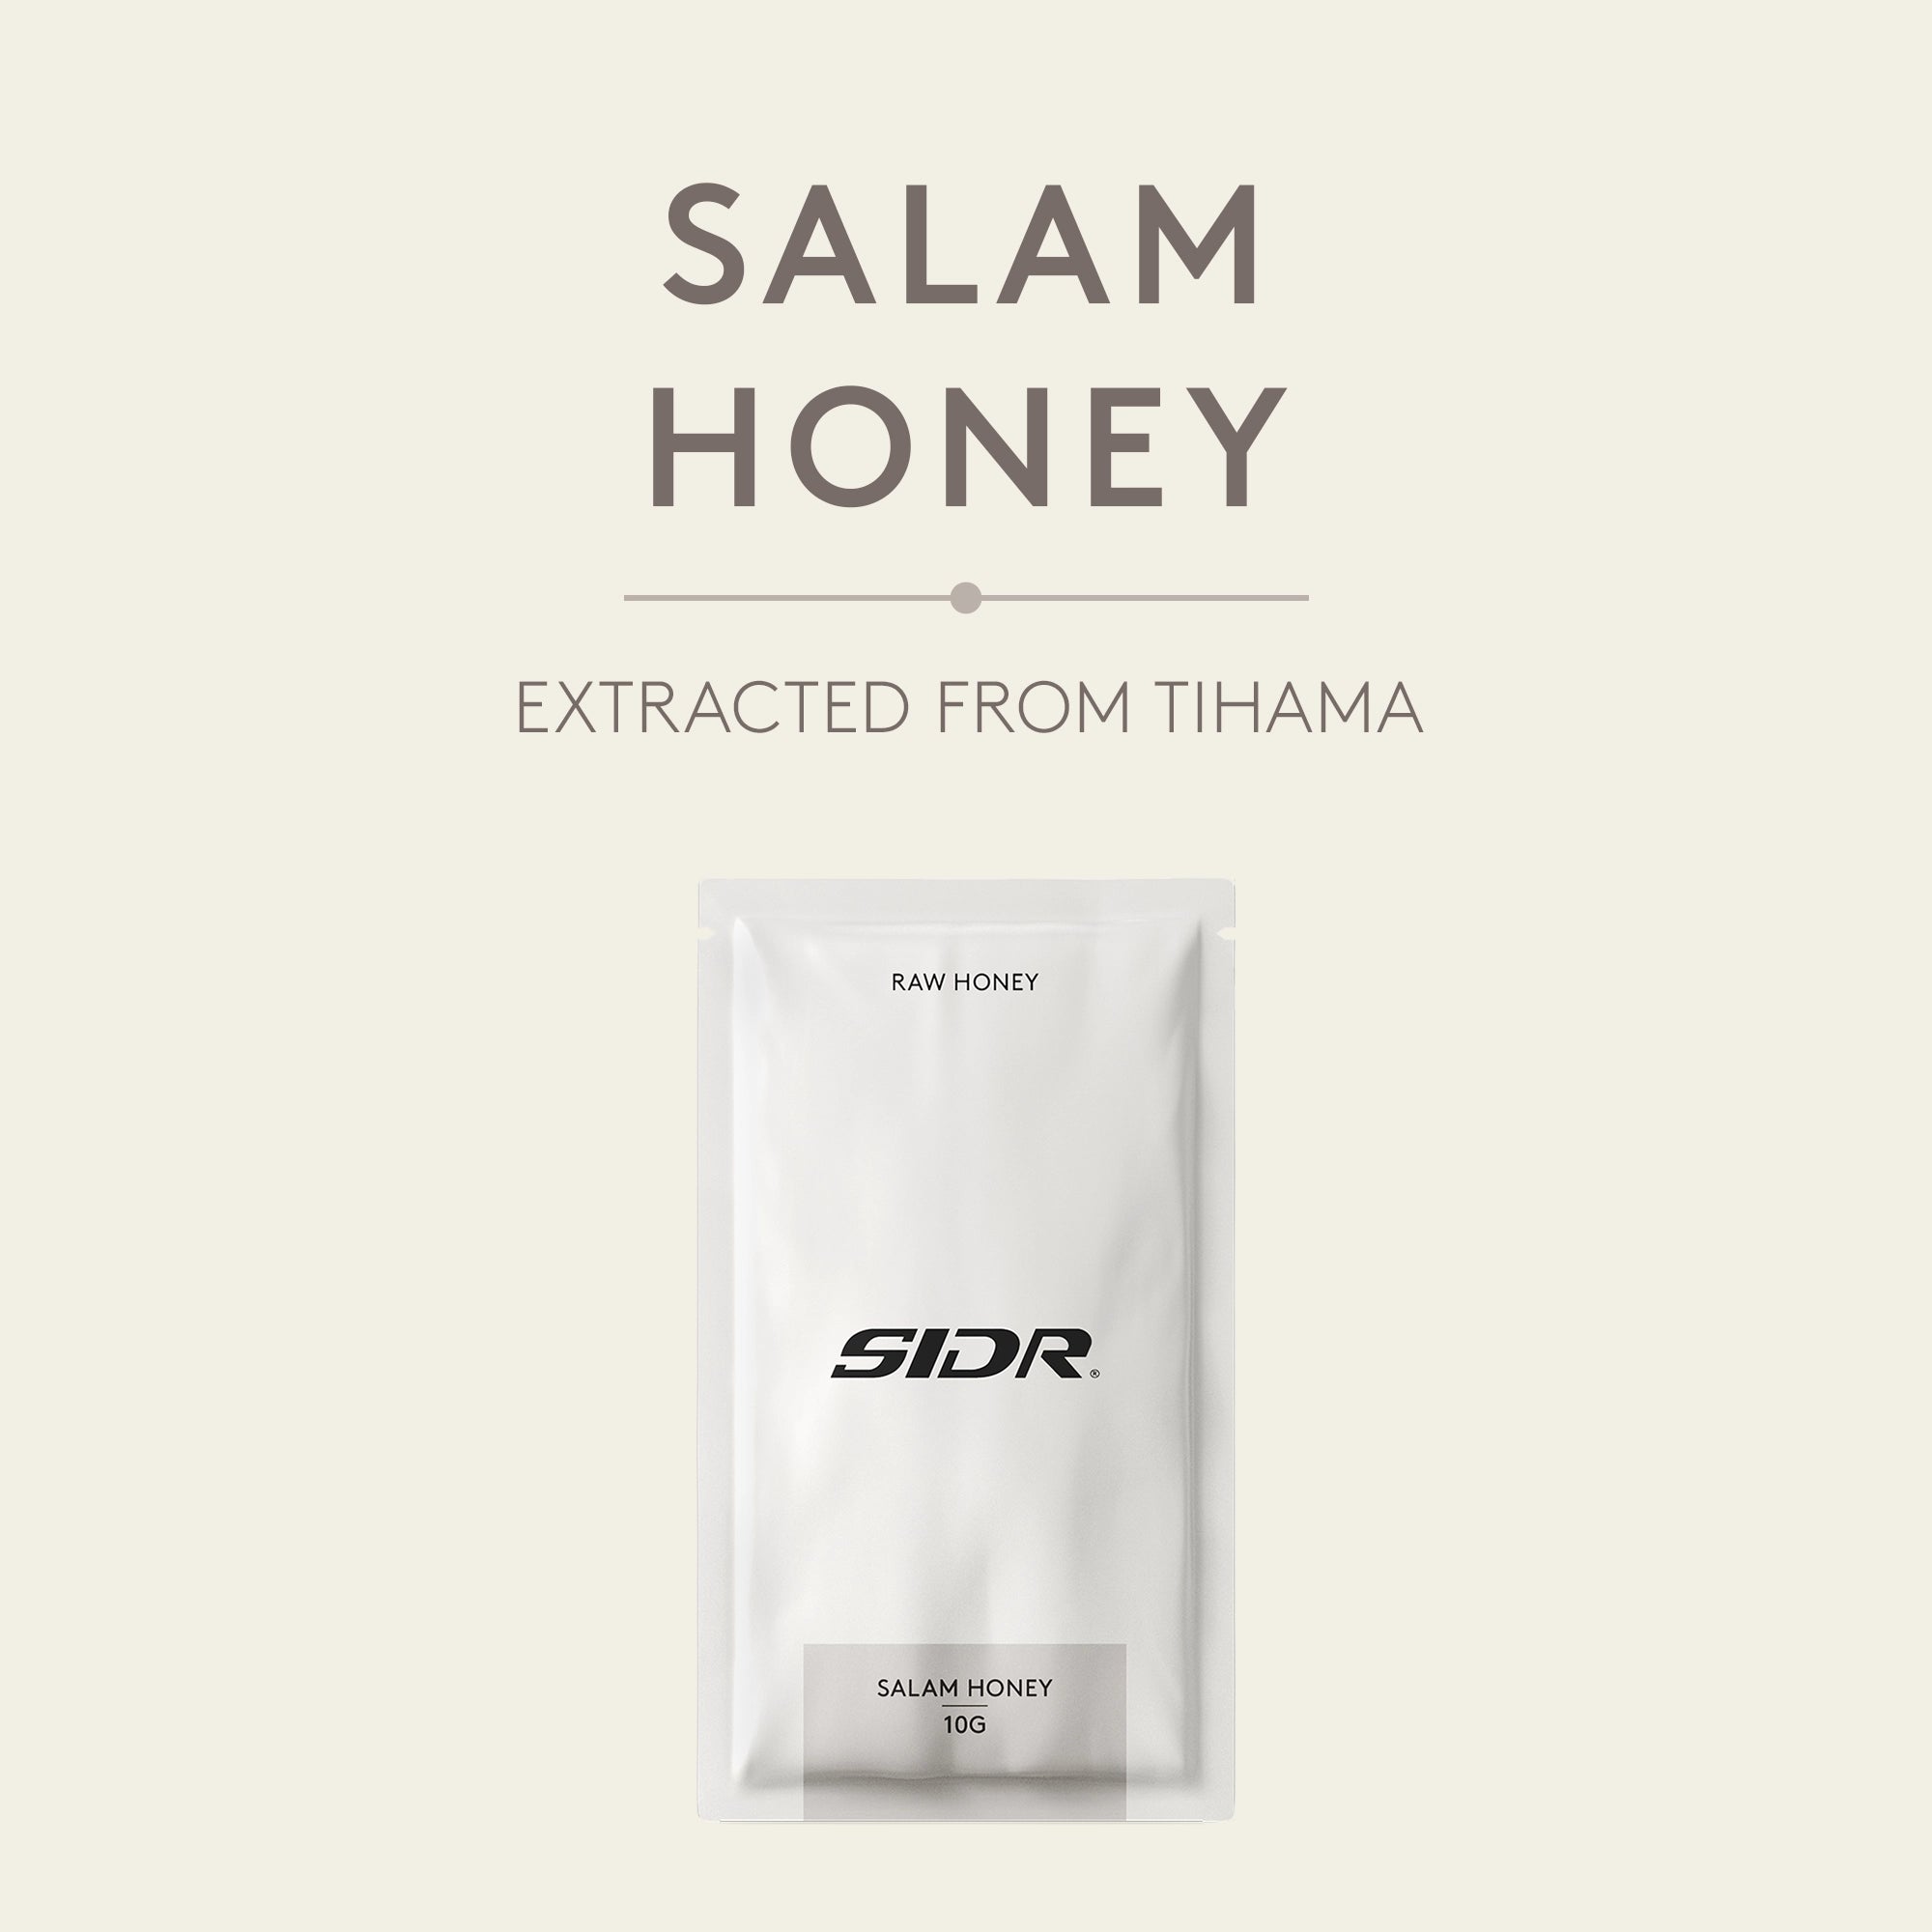 salam honey packet from tihama